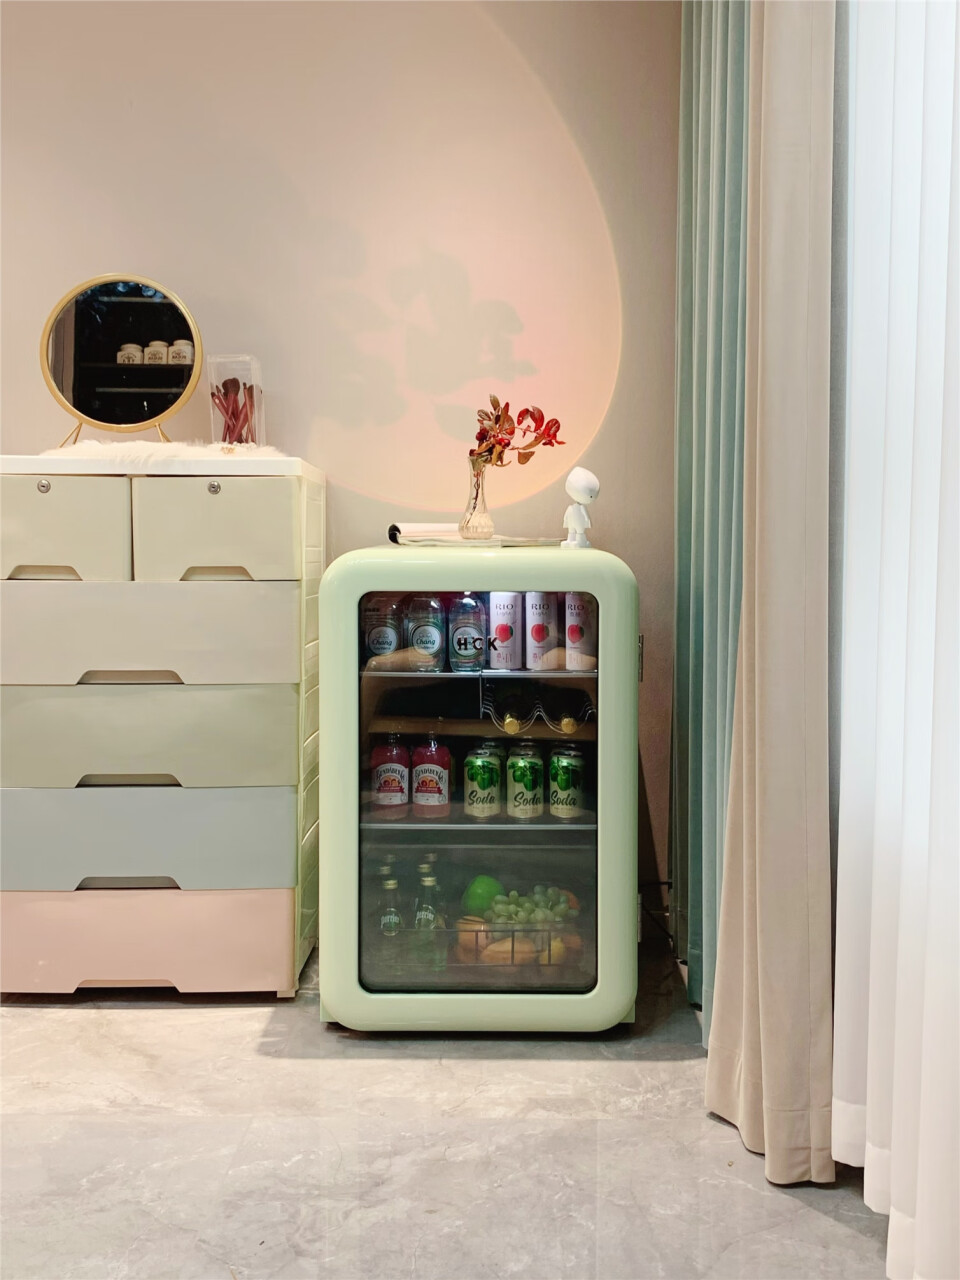 哈士奇冰吧单门家用冷藏冰吧茶叶保鲜柜冰箱迷你型恒温大容量立式冷柜小冰柜家用SC-130RBA-S薄荷绿,第4张